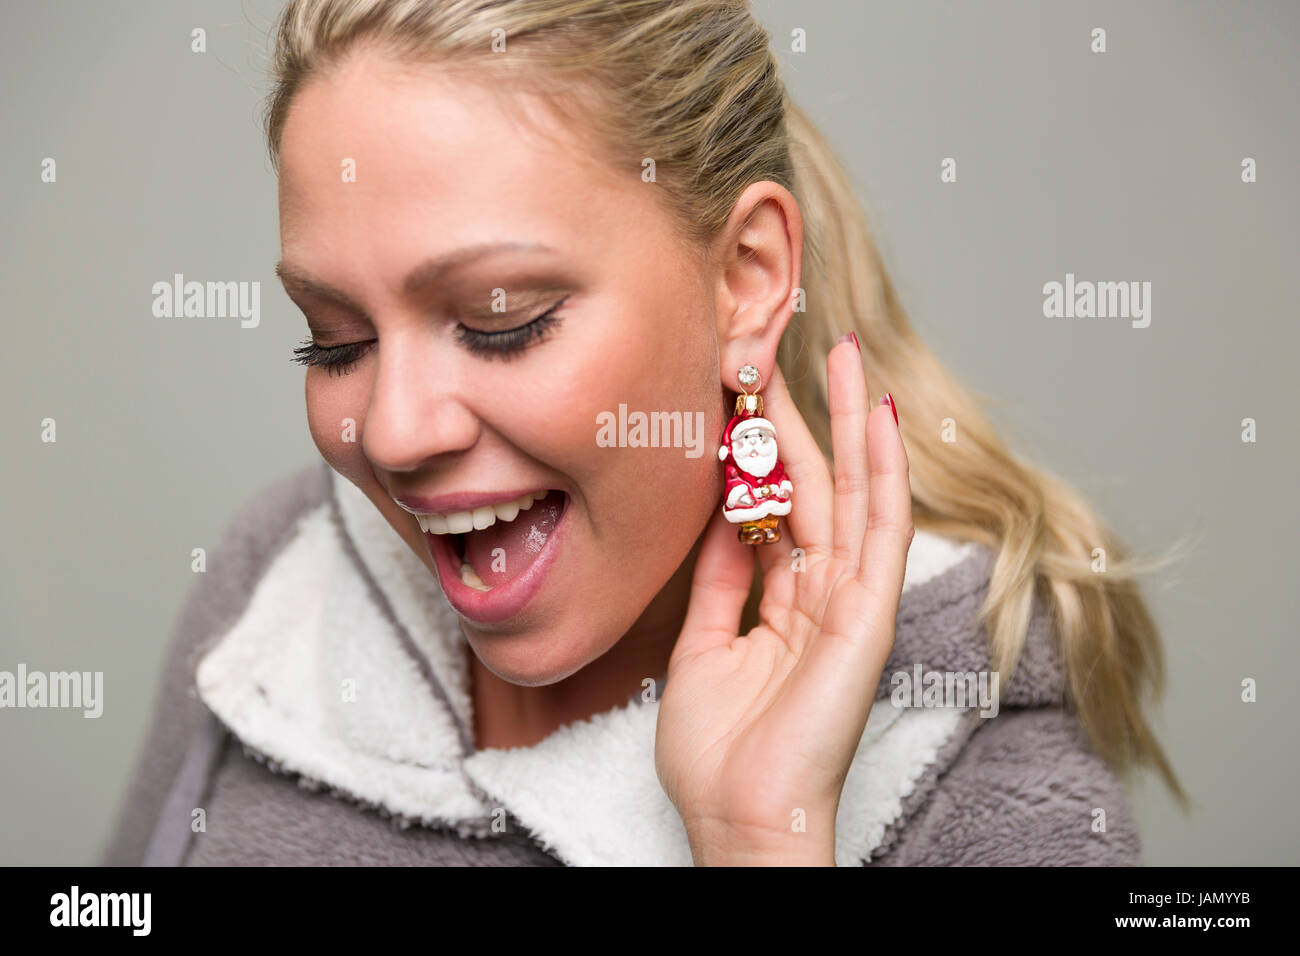 Frau mit blonden Haaren trägt Christbaumschmuck in Form eines Weihnachsmanss als Ohrring und zeigt diesen mit diesem die Vorfreude auf Weihnachten. Stock Photo